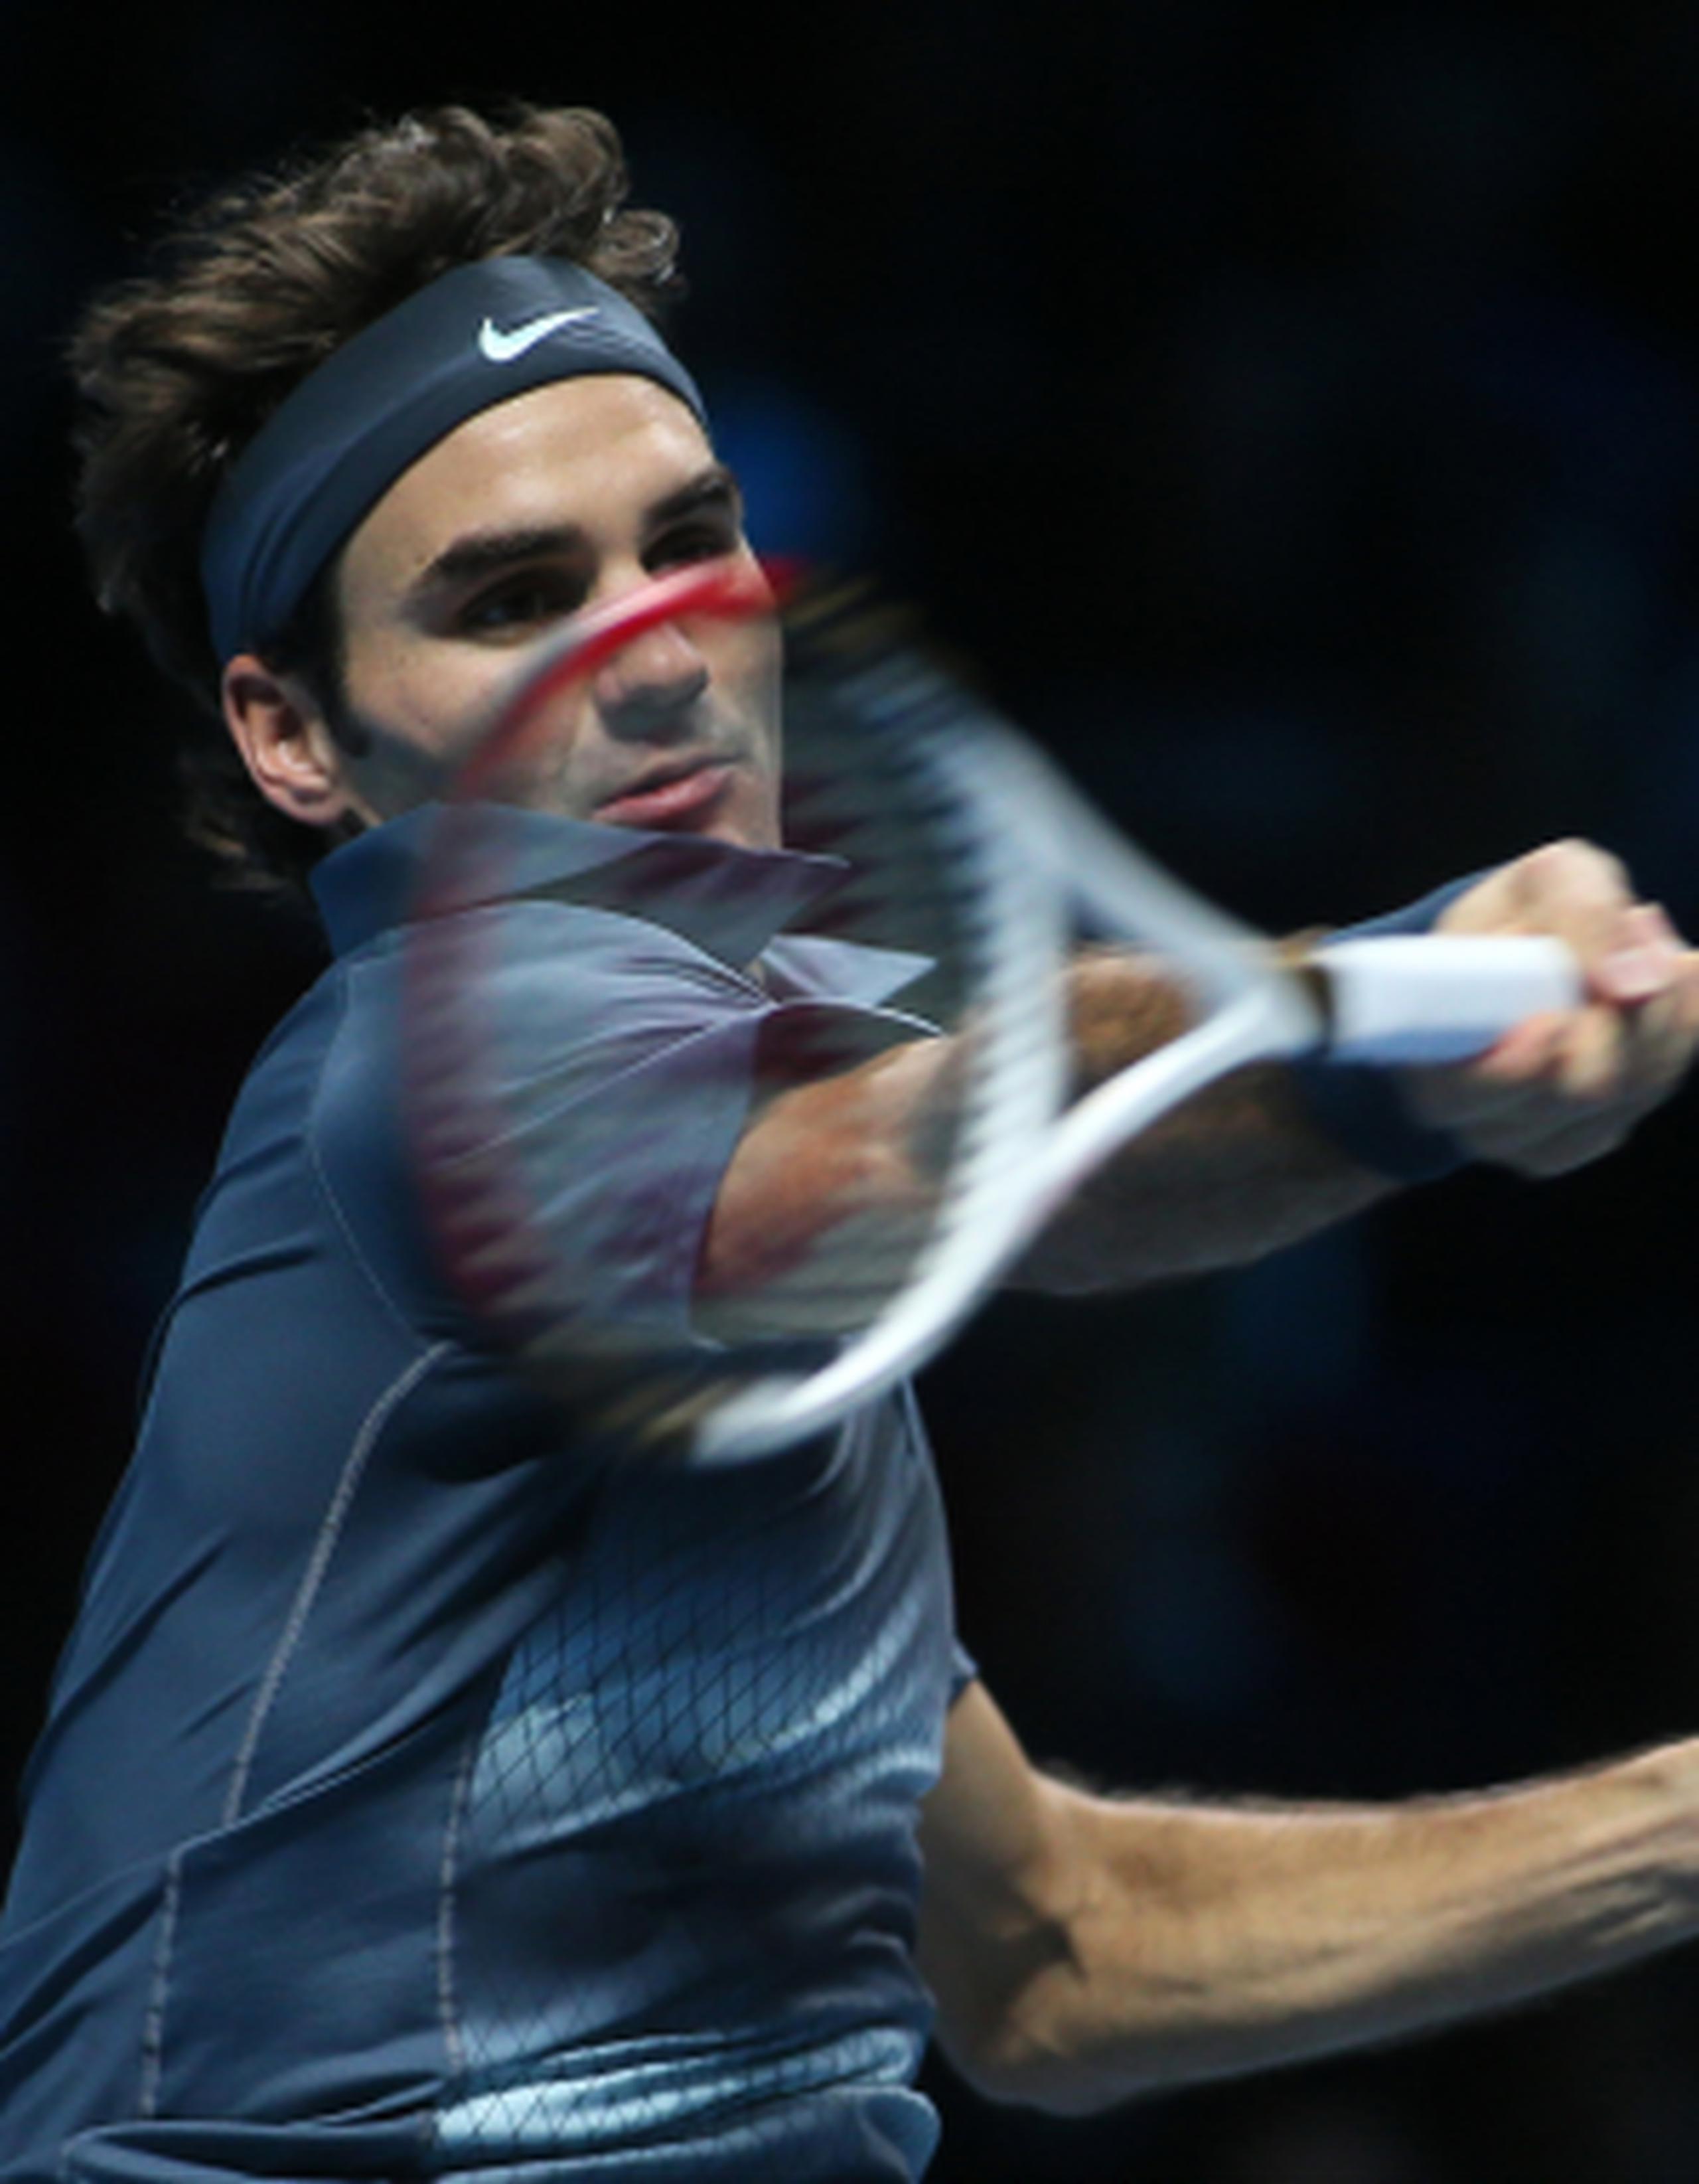 "No tengo día de descanso. Tengo que reponerme y estar listo para mañana", dijo Federer.